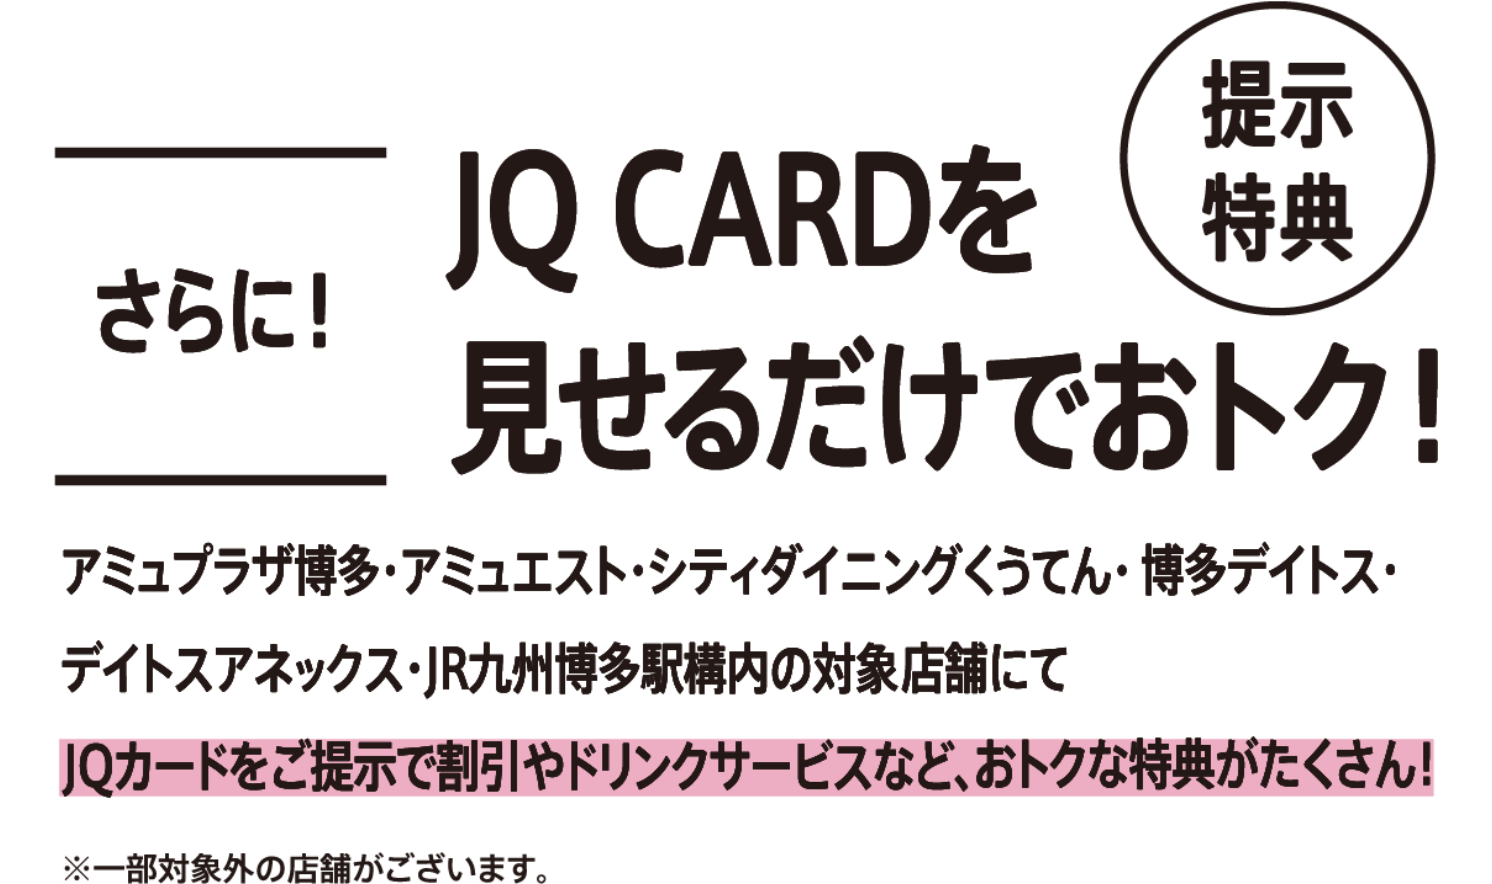 更加！仅仅只是显示出JQ CARD也合算！